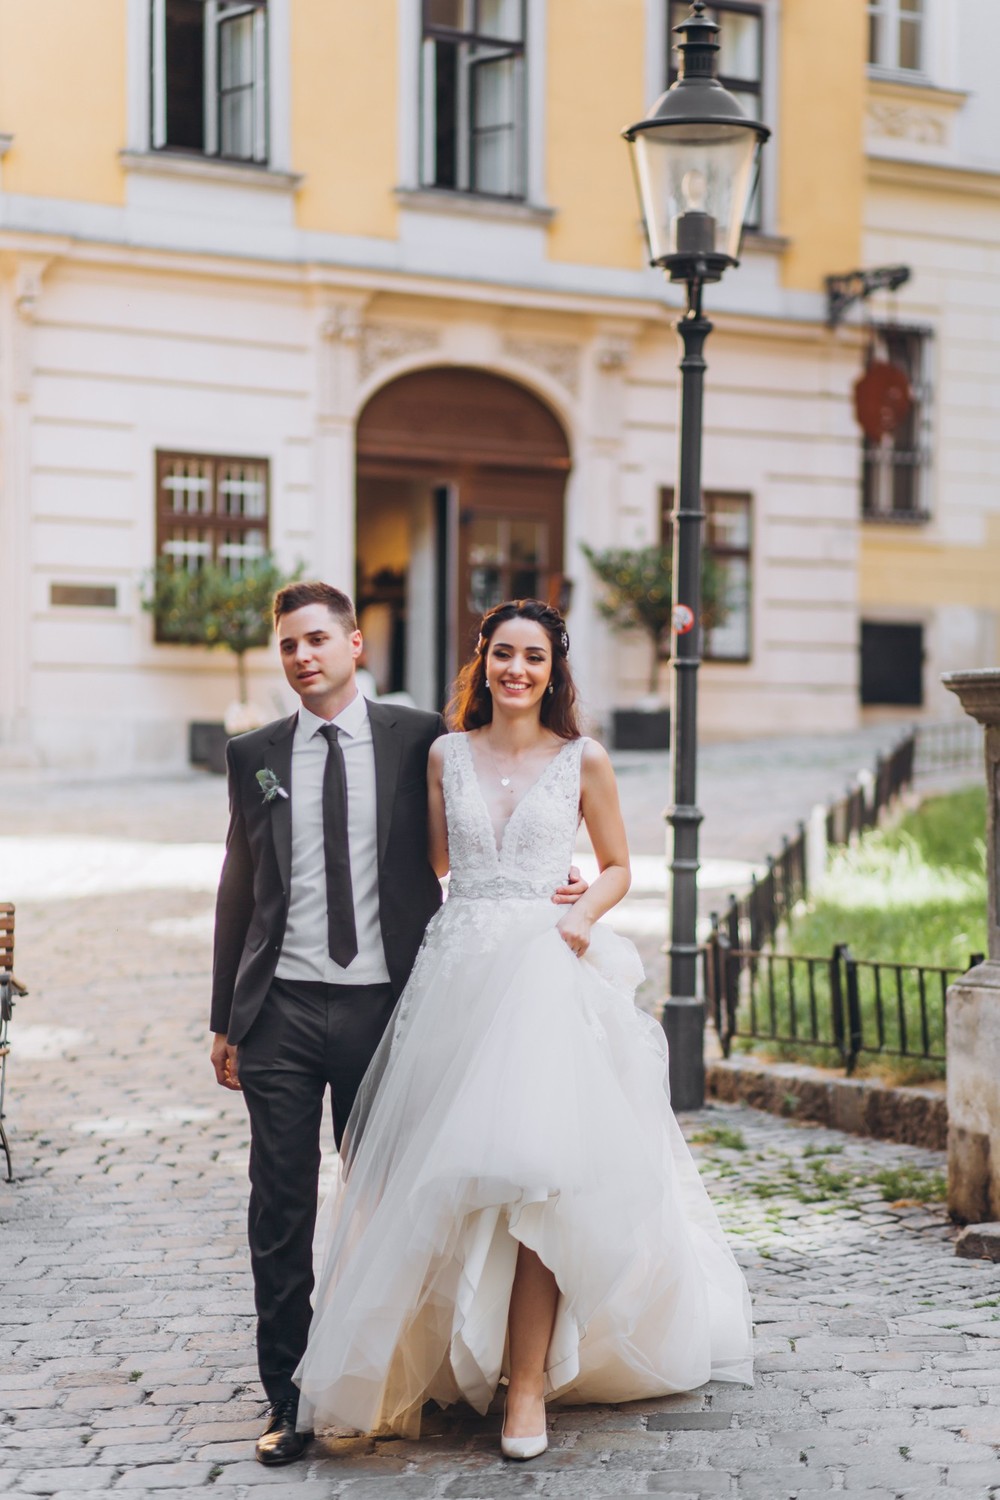 WEDDING IN VIENNA